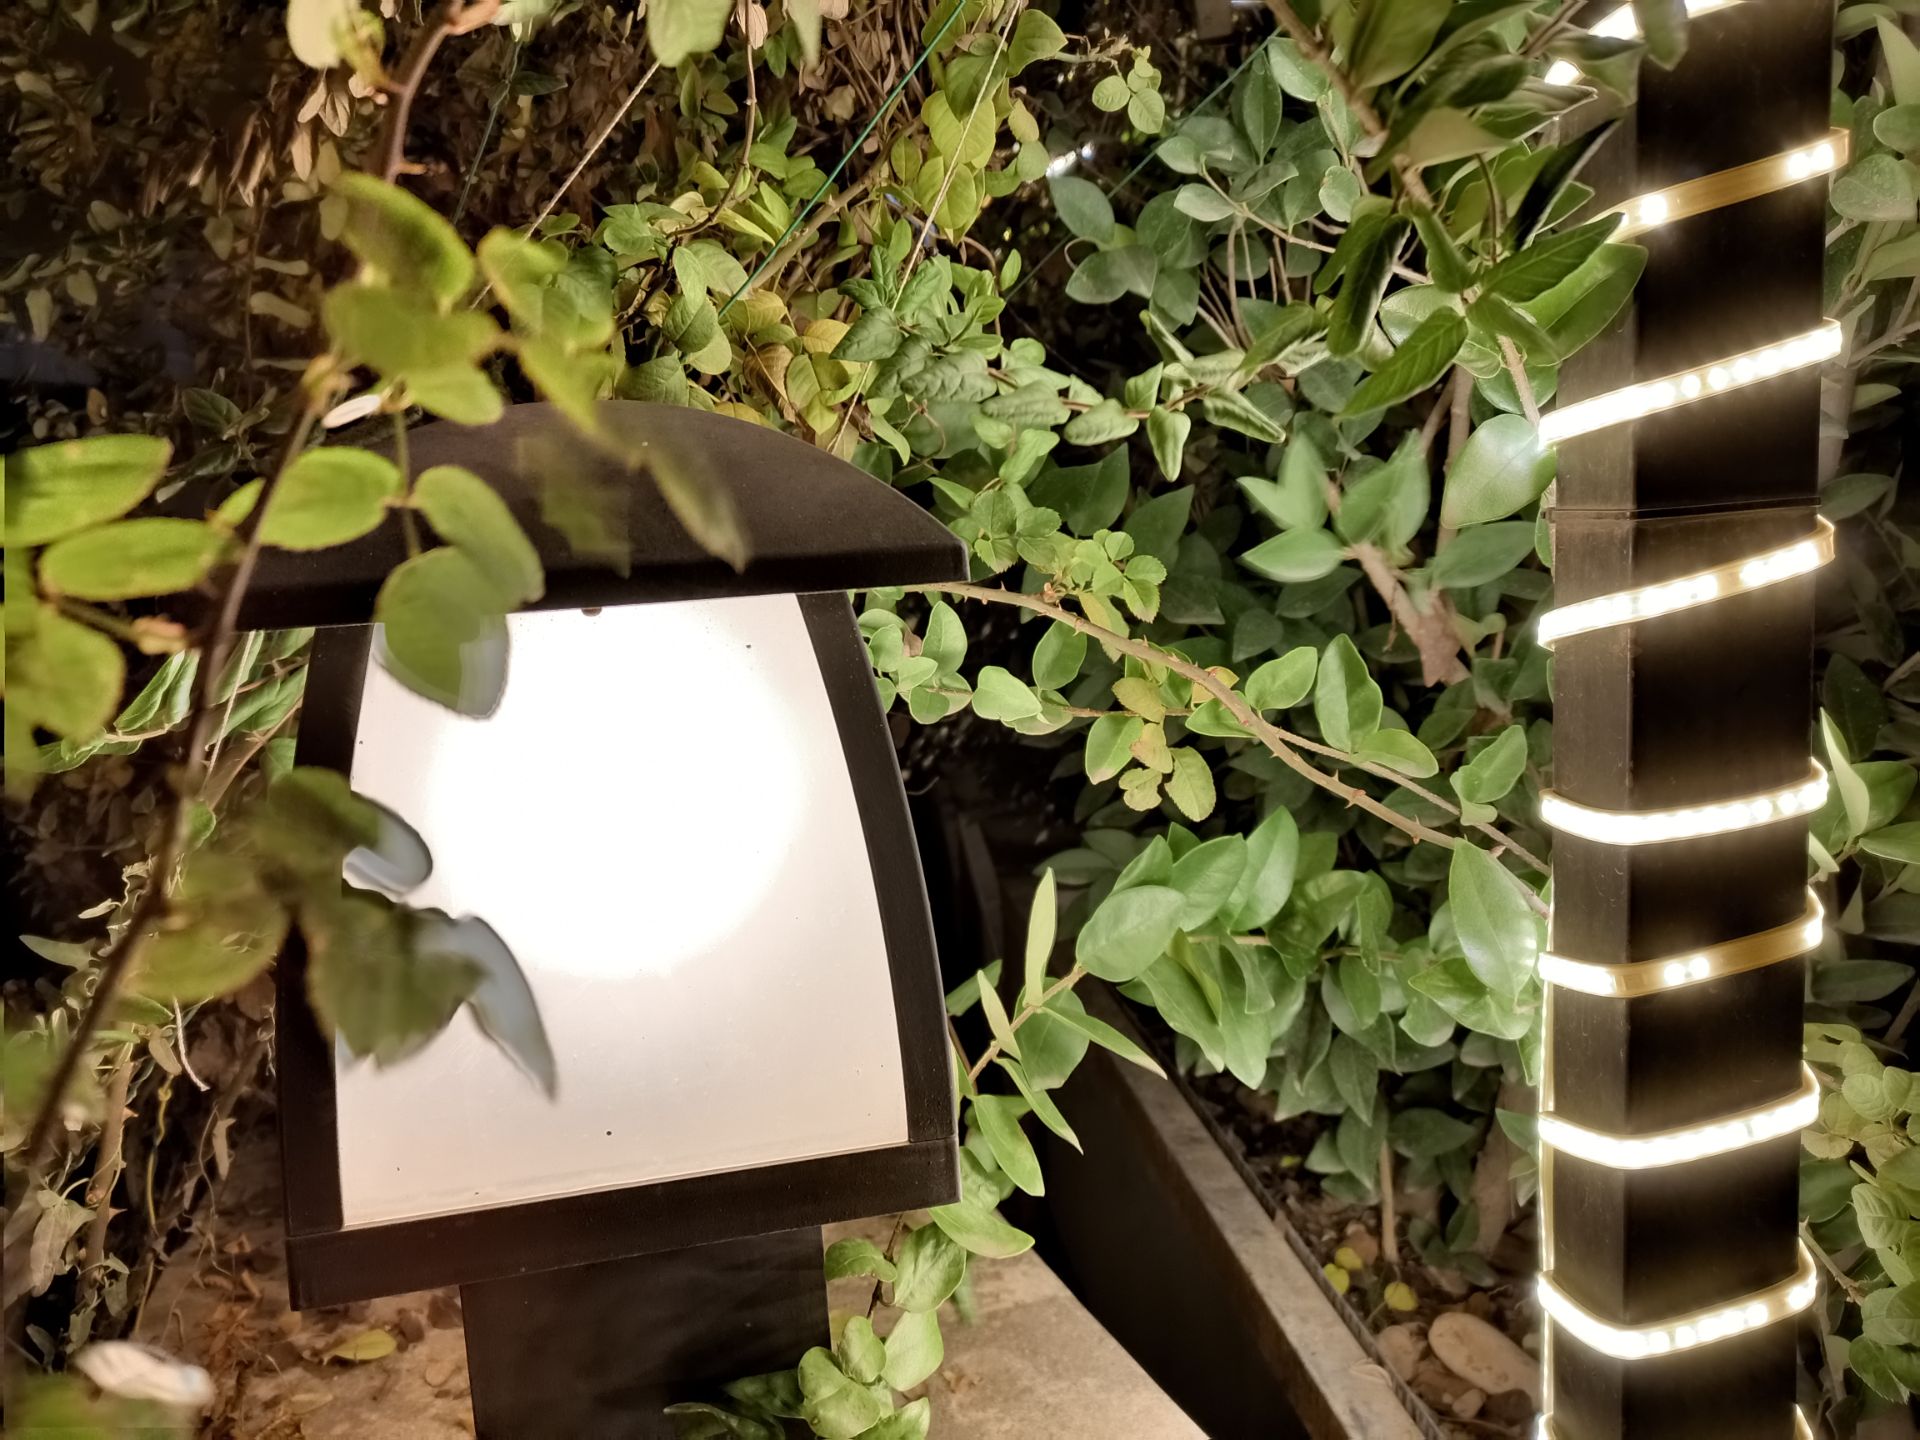 نمونه عکس ۲ برابری دوربین اصلی گوشی هواوی Y9a در تاریکی - چراغی در میان گیاهان پارک آب و آتش تهران